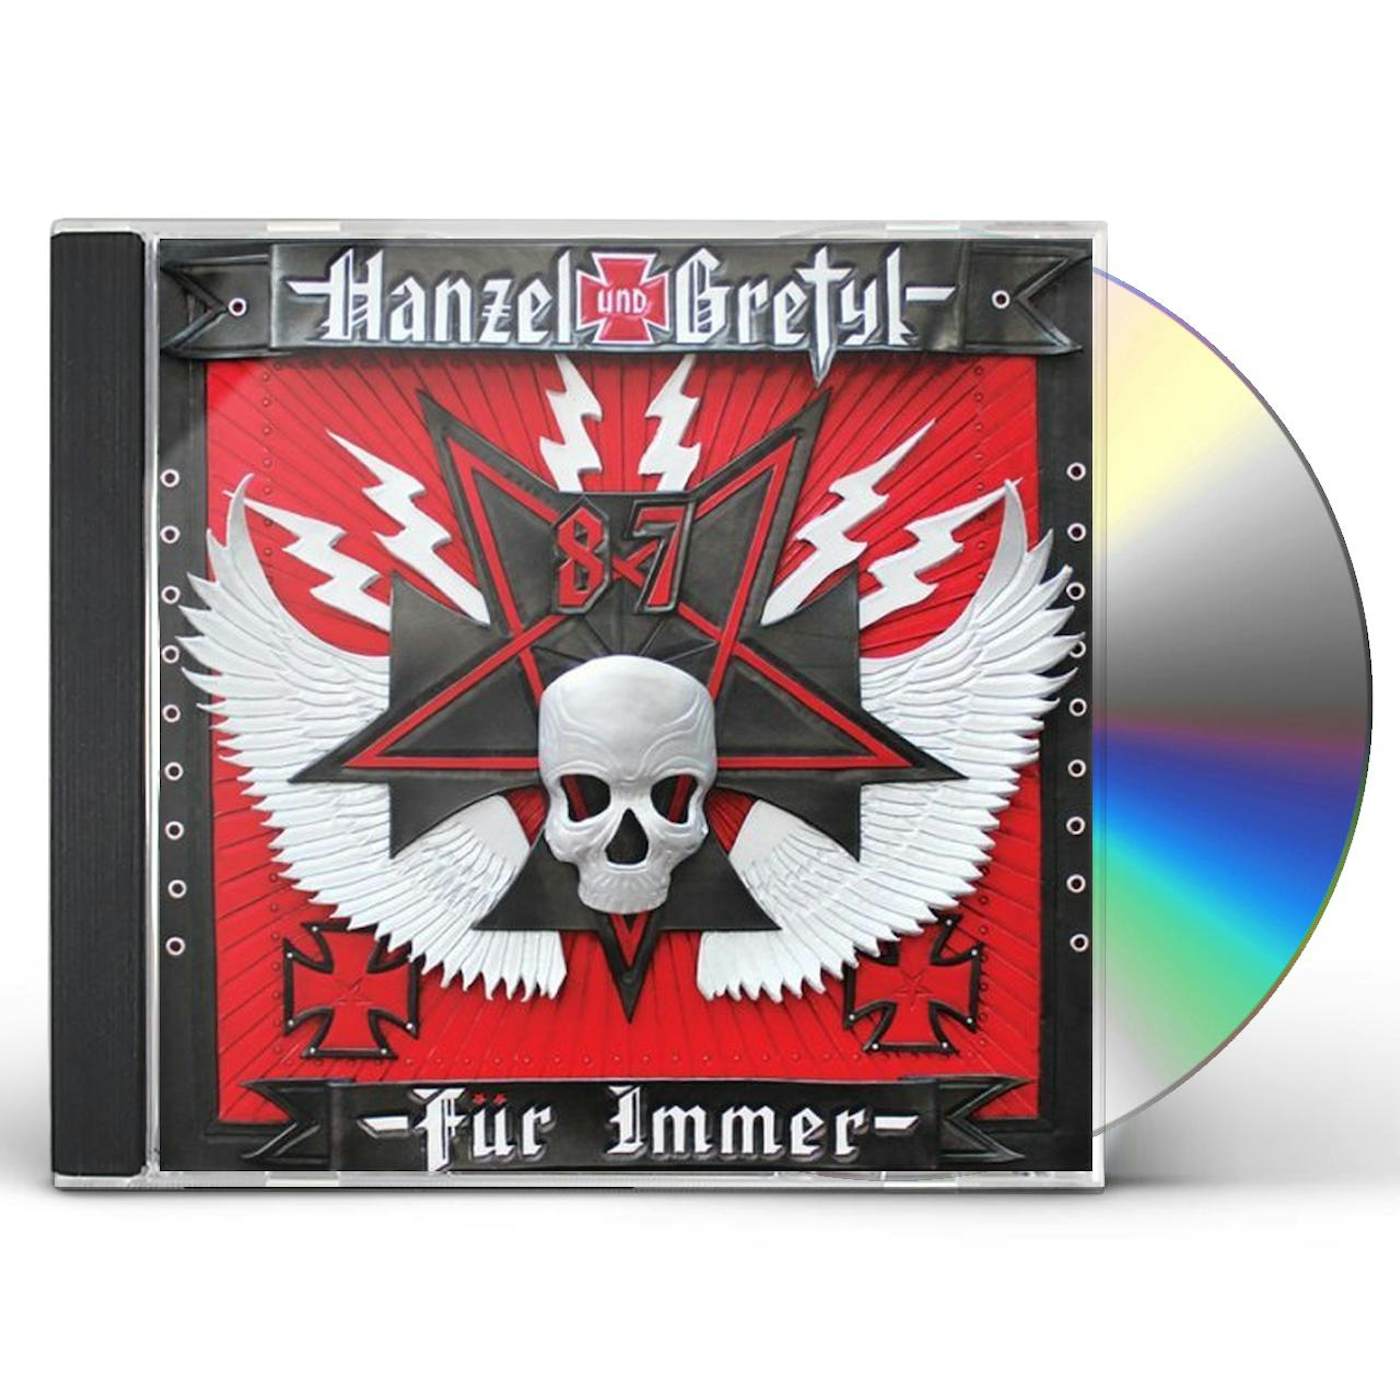 HANZEL UND GRETYL FUR IMMER CD